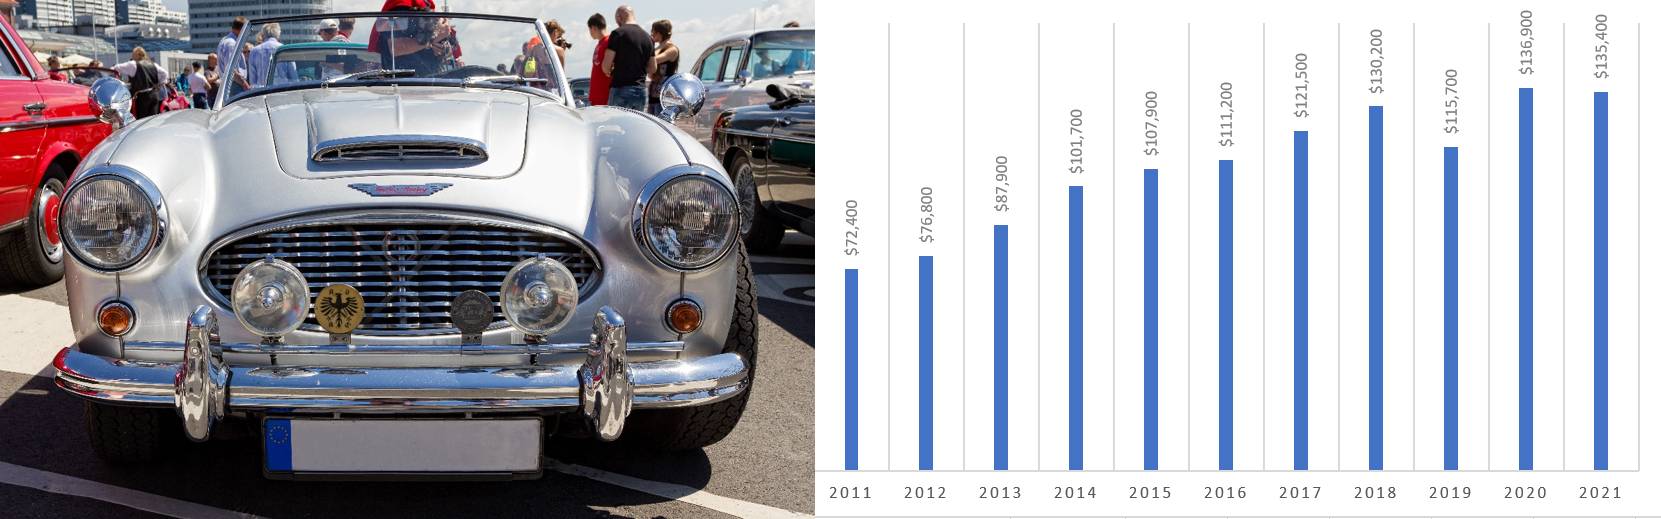 Austin Healy car value graph